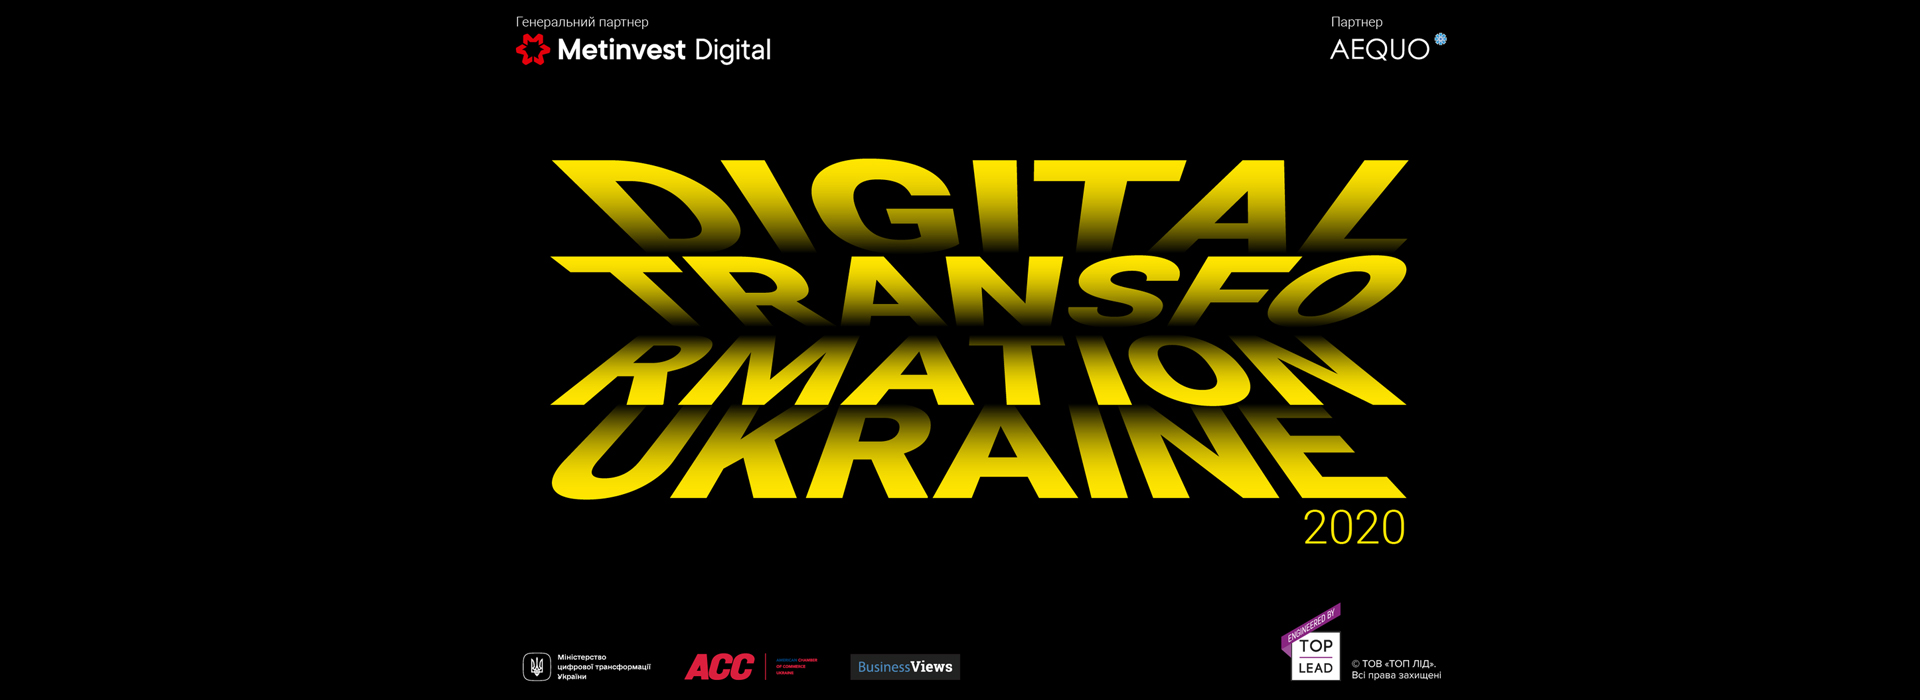 Top Lead опублікувала інфографічне дослідження про цифрову трансформацію українського бізнесу